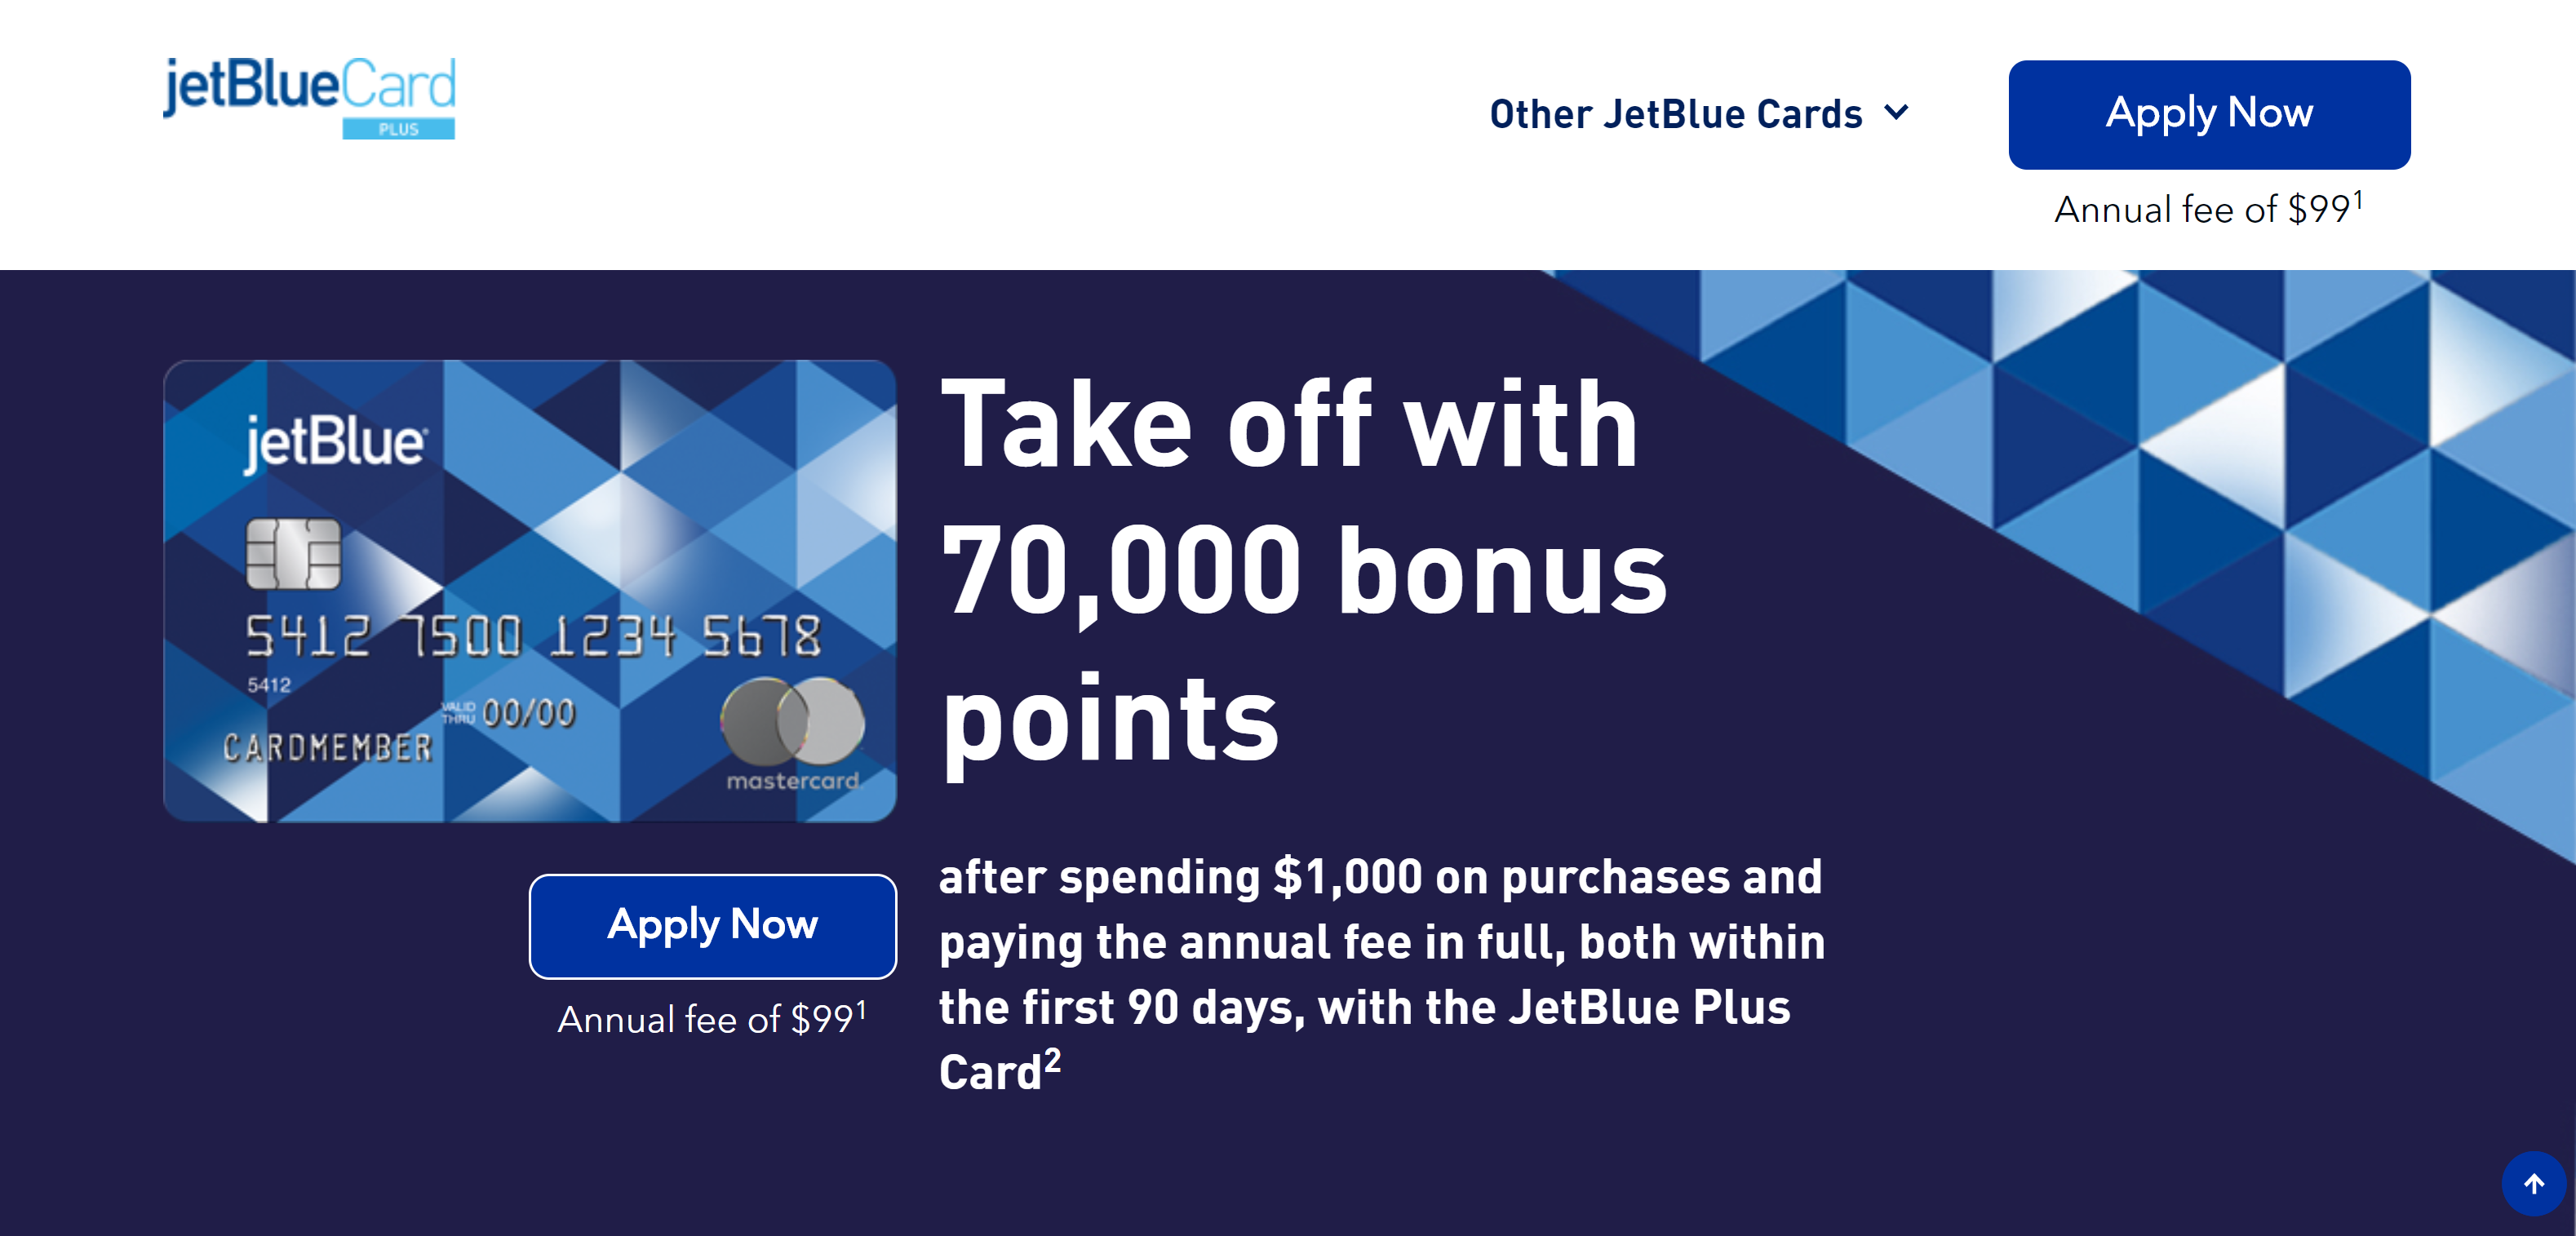 www.jetbluemastercard.com – Sign into Barclays JetBlue